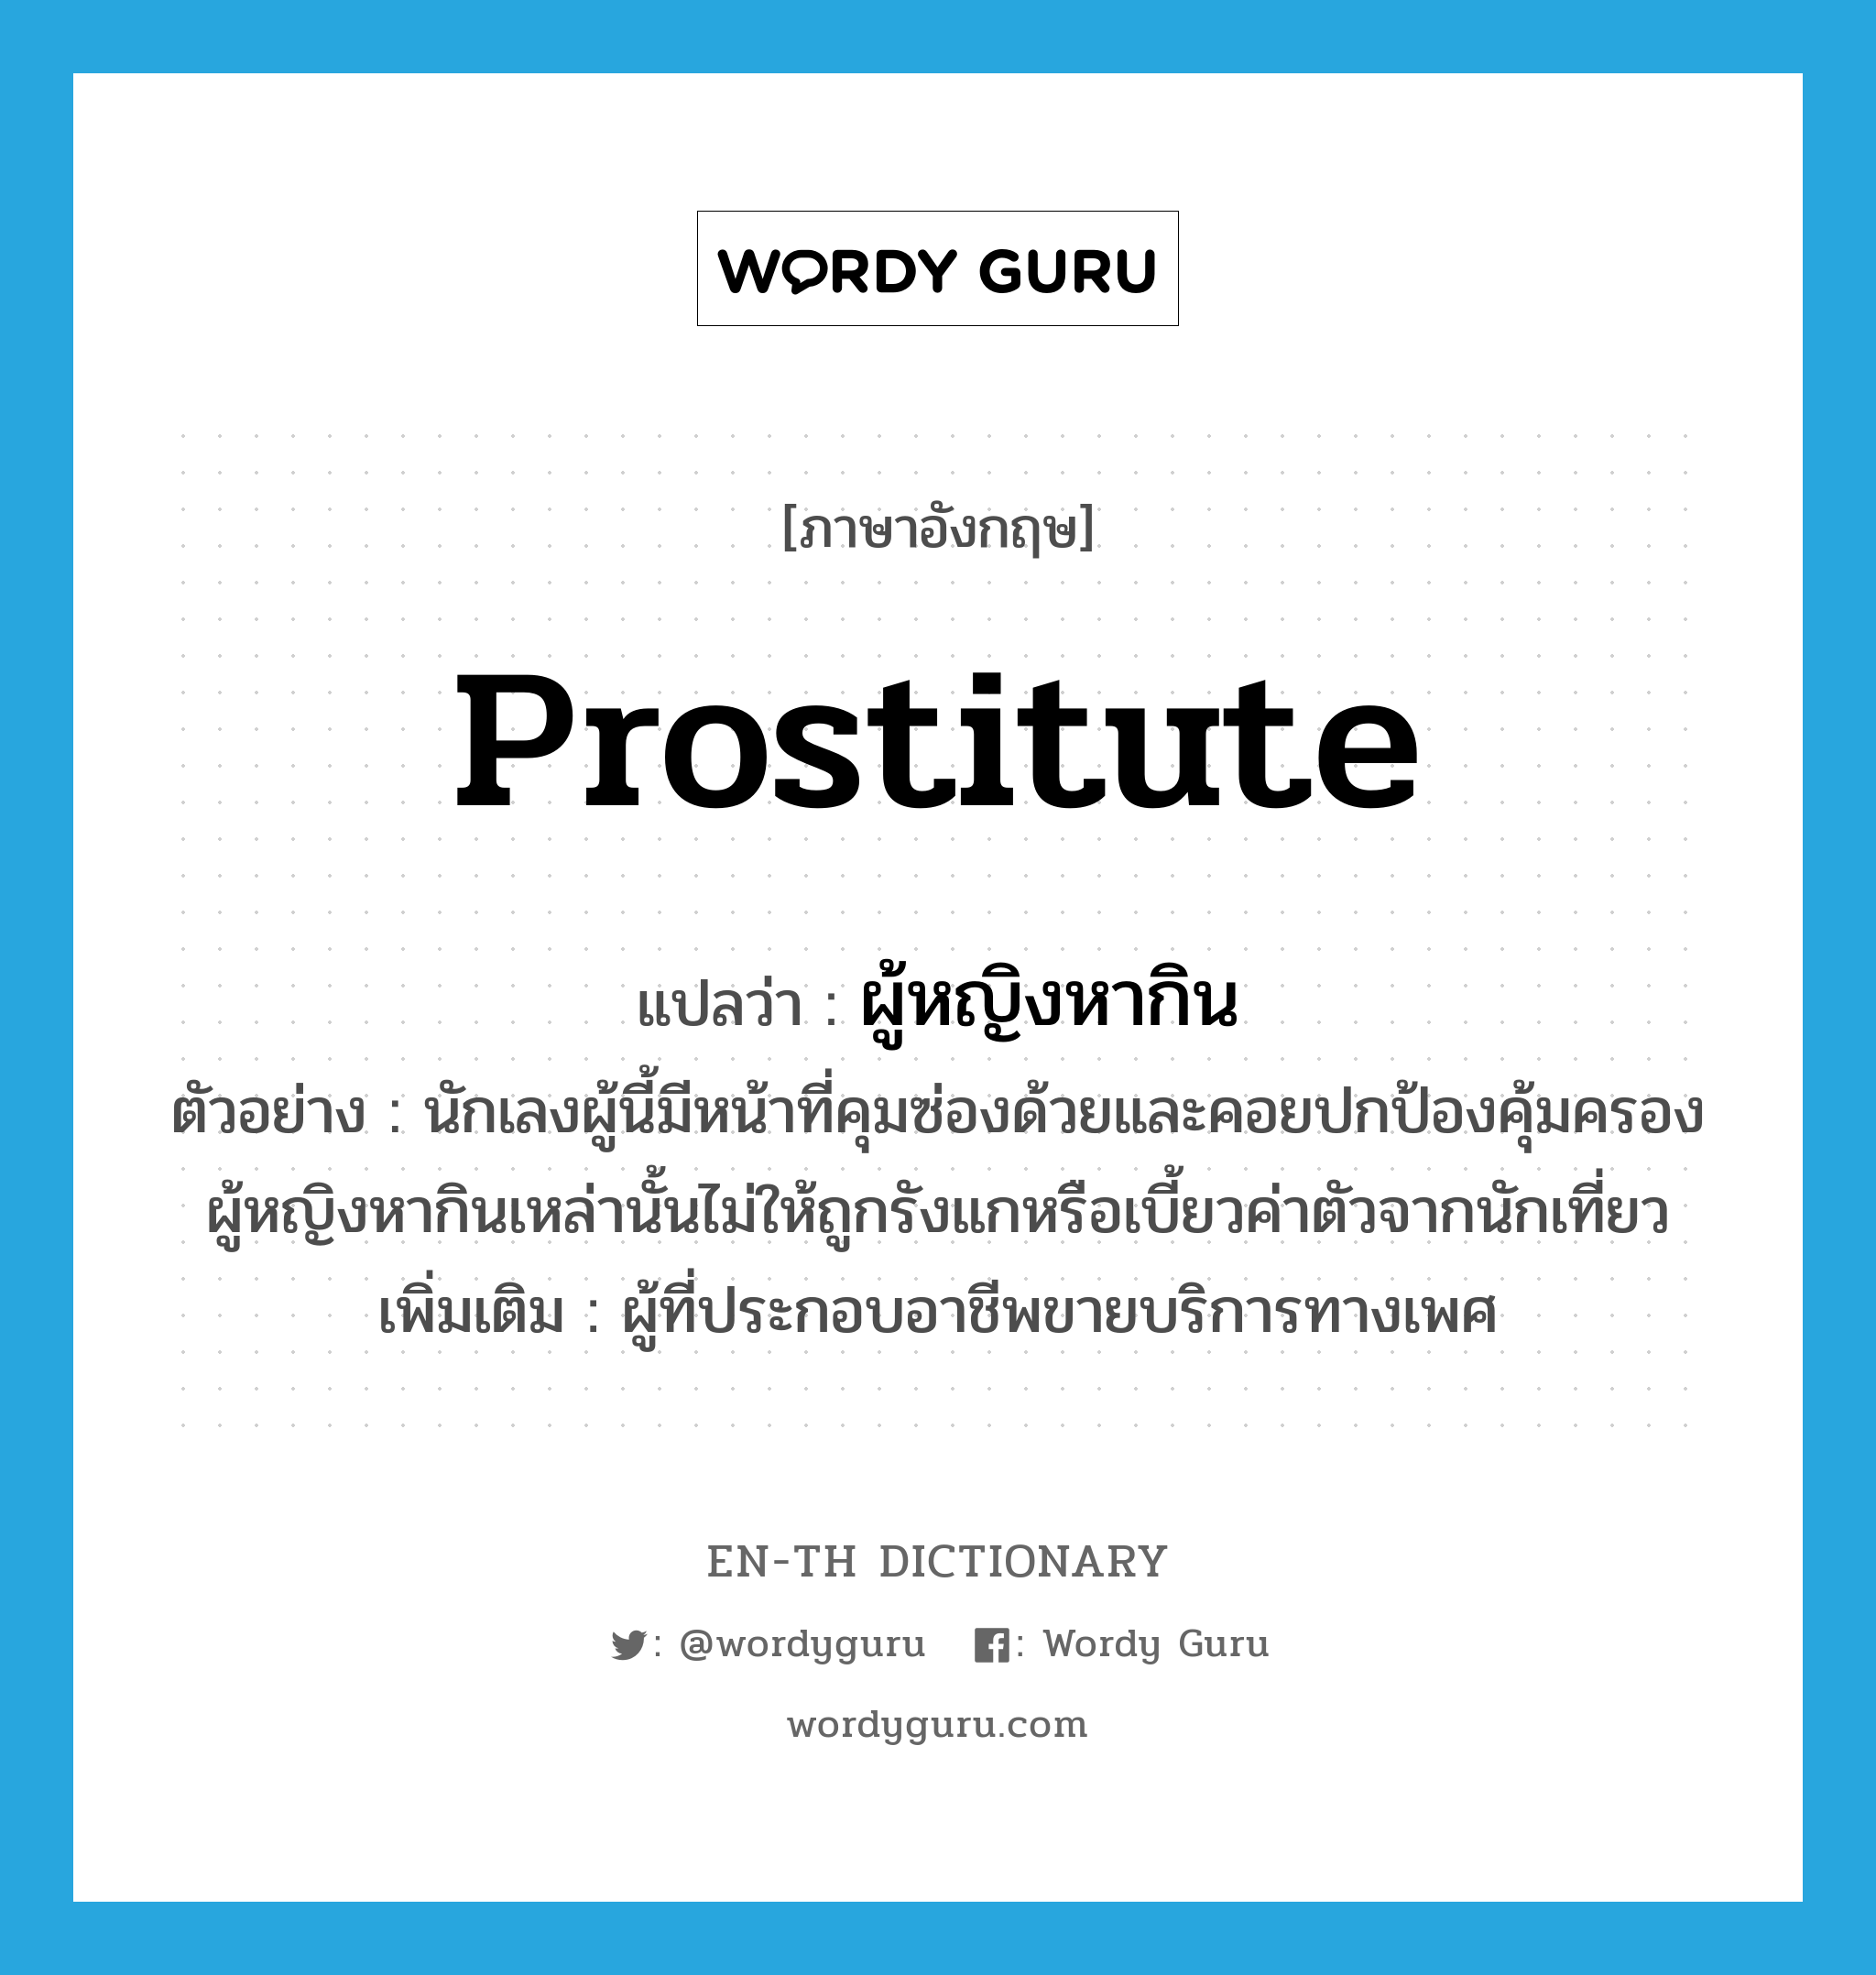 prostitute แปลว่า?, คำศัพท์ภาษาอังกฤษ prostitute แปลว่า ผู้หญิงหากิน ประเภท N ตัวอย่าง นักเลงผู้นี้มีหน้าที่คุมซ่องด้วยและคอยปกป้องคุ้มครองผู้หญิงหากินเหล่านั้นไม่ให้ถูกรังแกหรือเบี้ยวค่าตัวจากนักเที่ยว เพิ่มเติม ผู้ที่ประกอบอาชีพขายบริการทางเพศ หมวด N